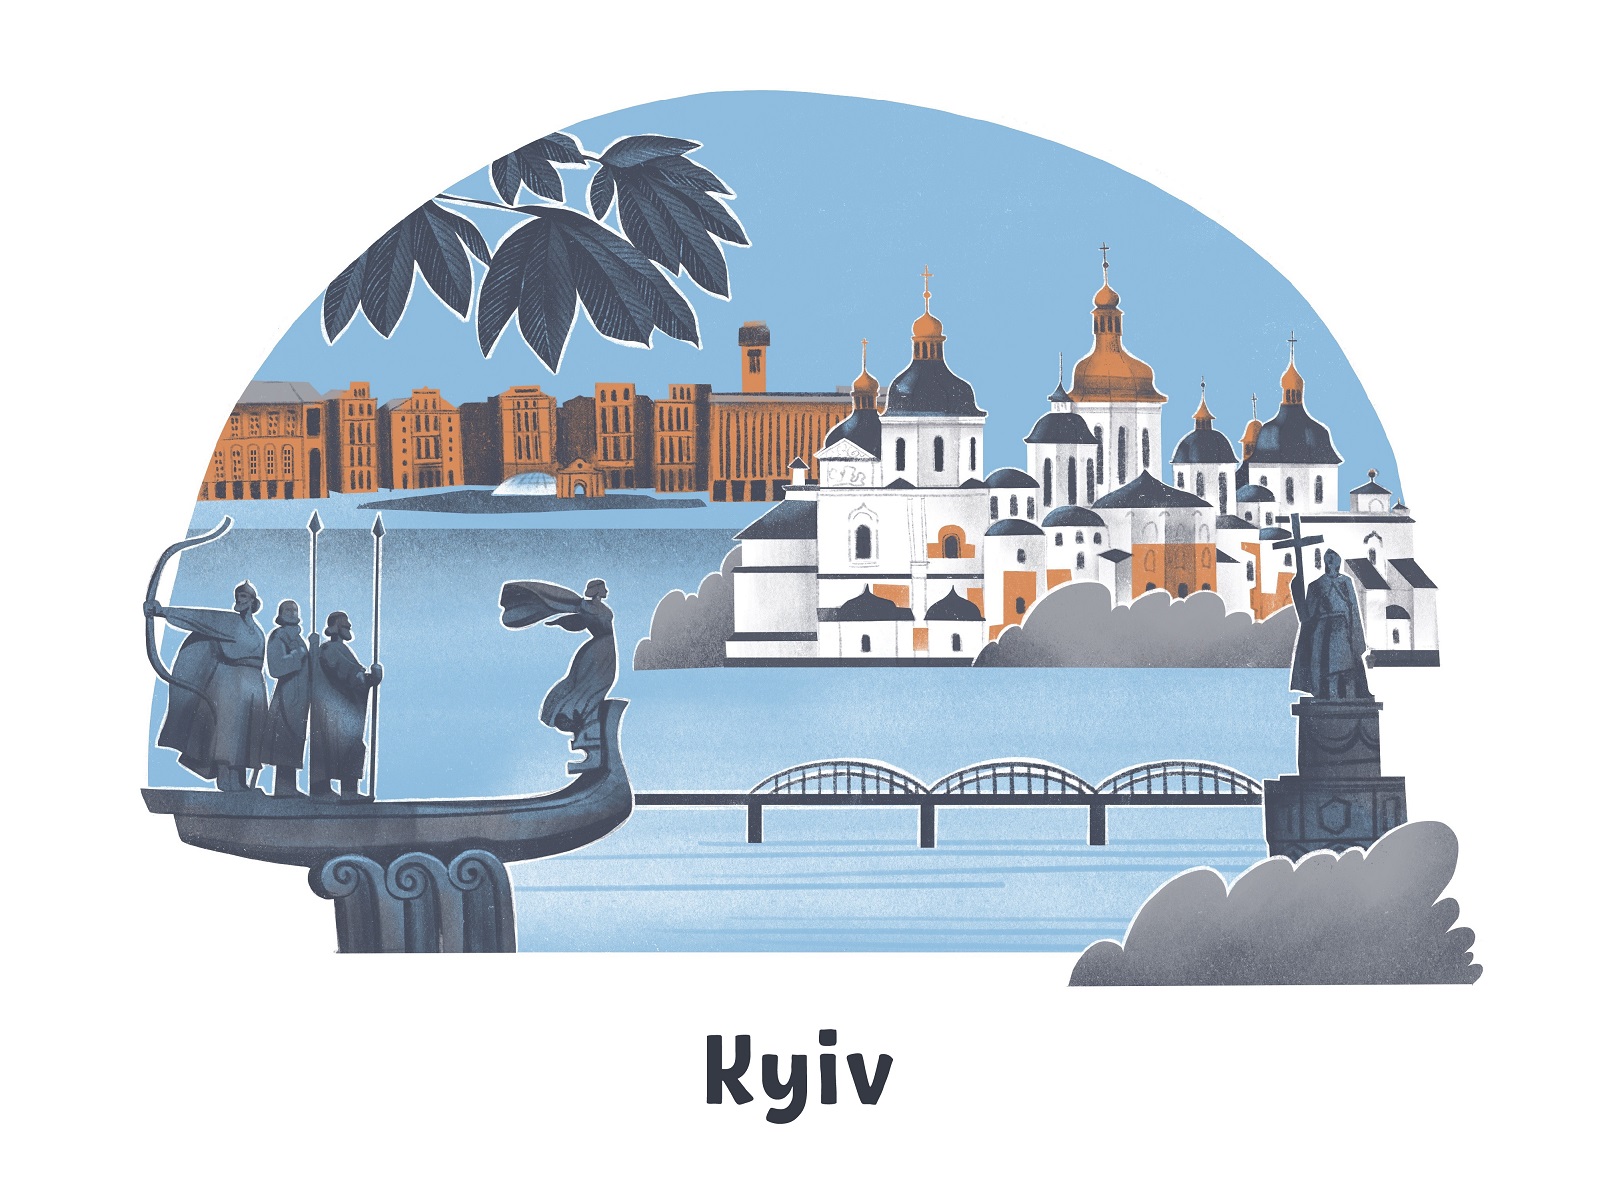 Kyiv-cities-of-Ukraine-illustration-tubikarts-reduced